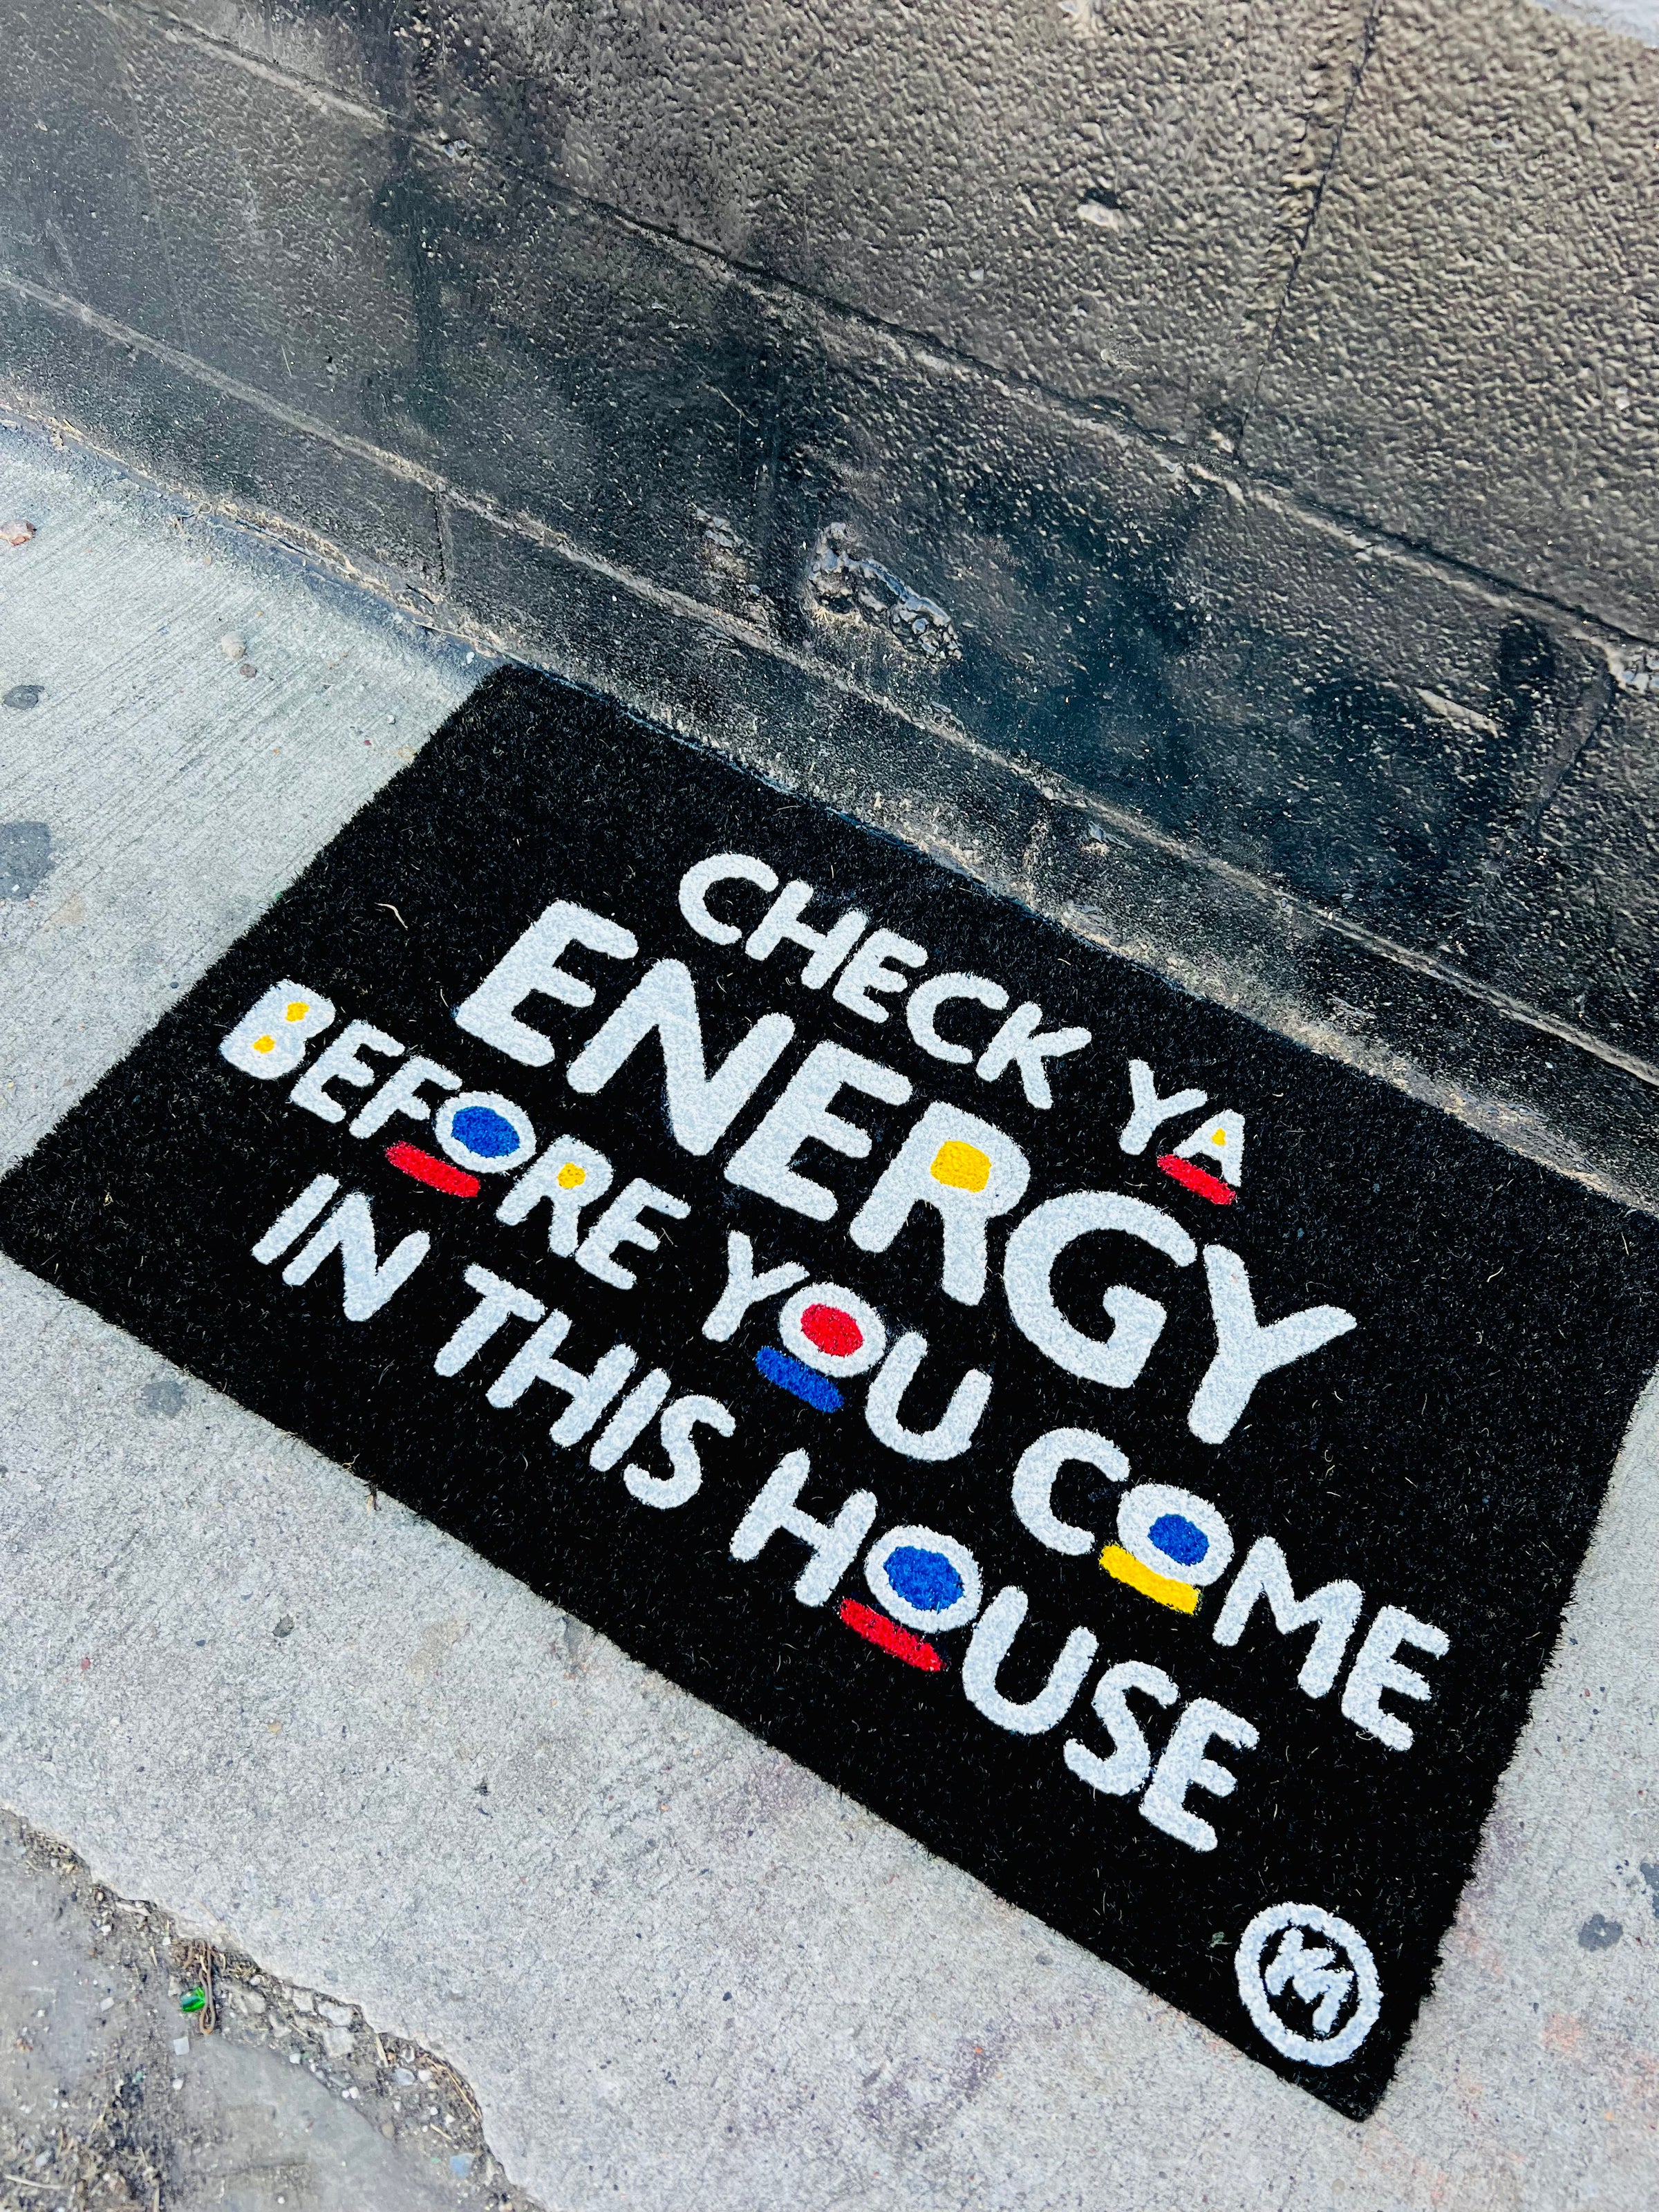 Big Deck Energy Doormat